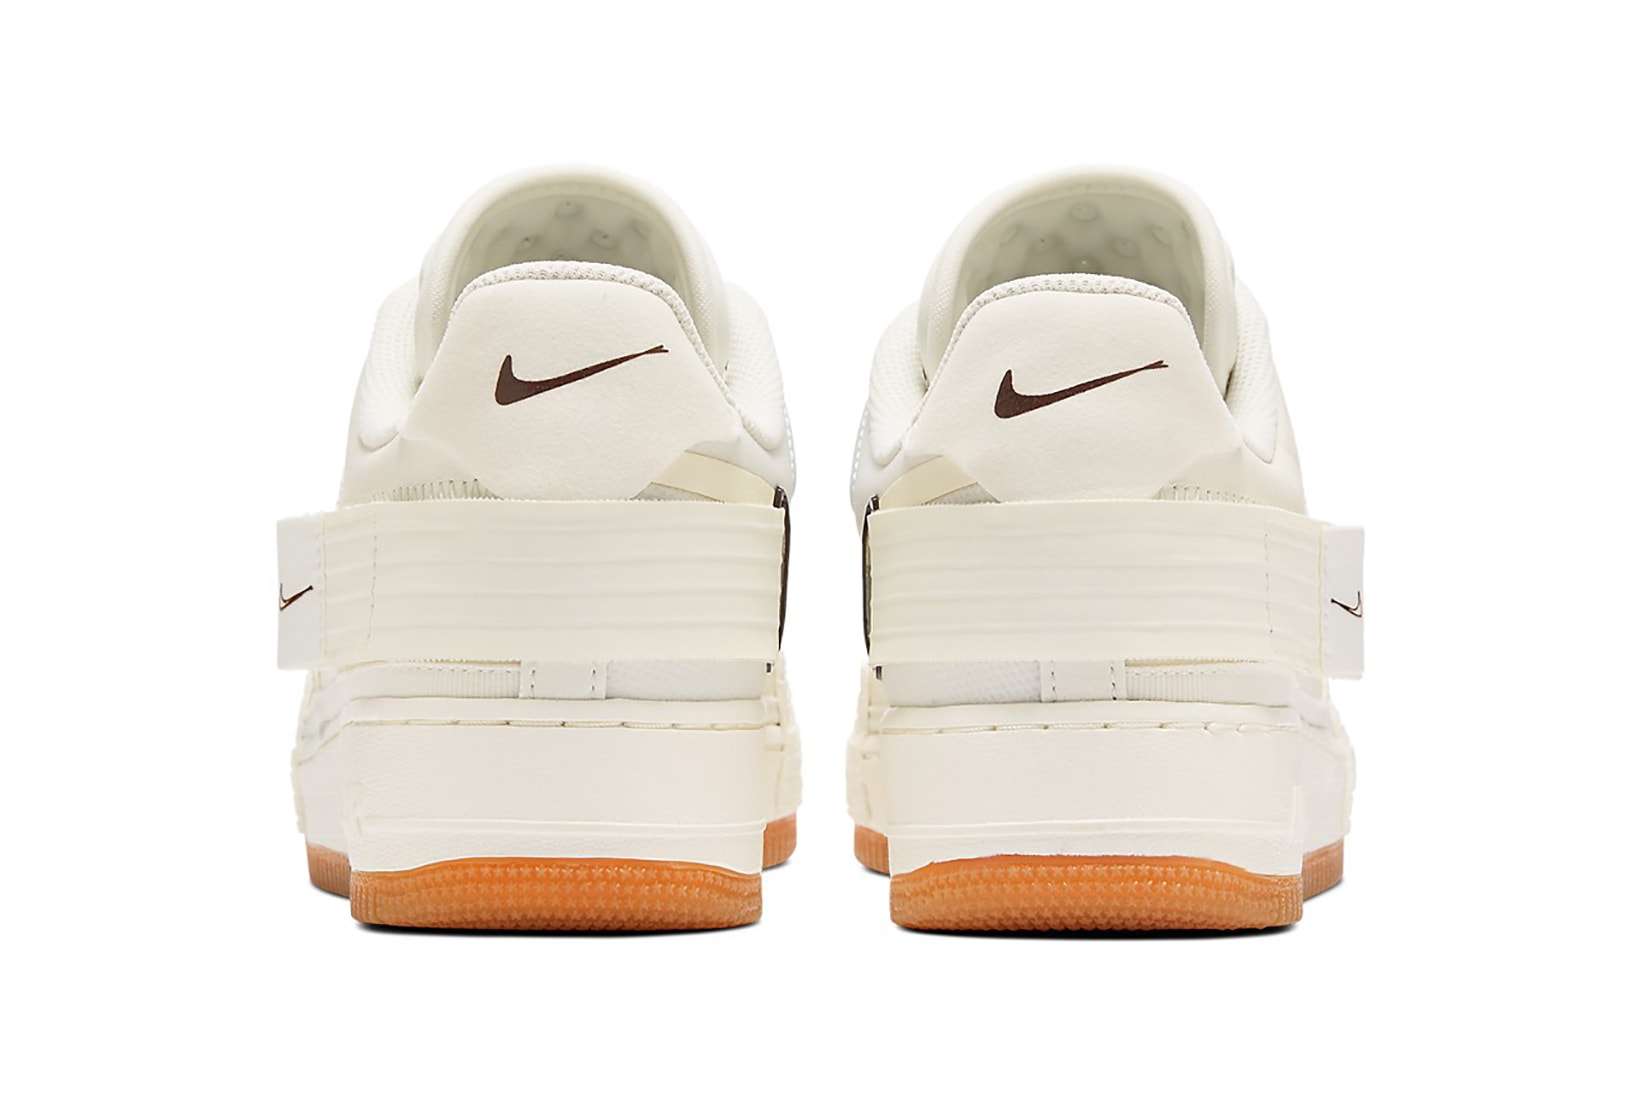 nike air force 1 type n354 sneakers cream white ivory brown shoes footwear sneakerhead